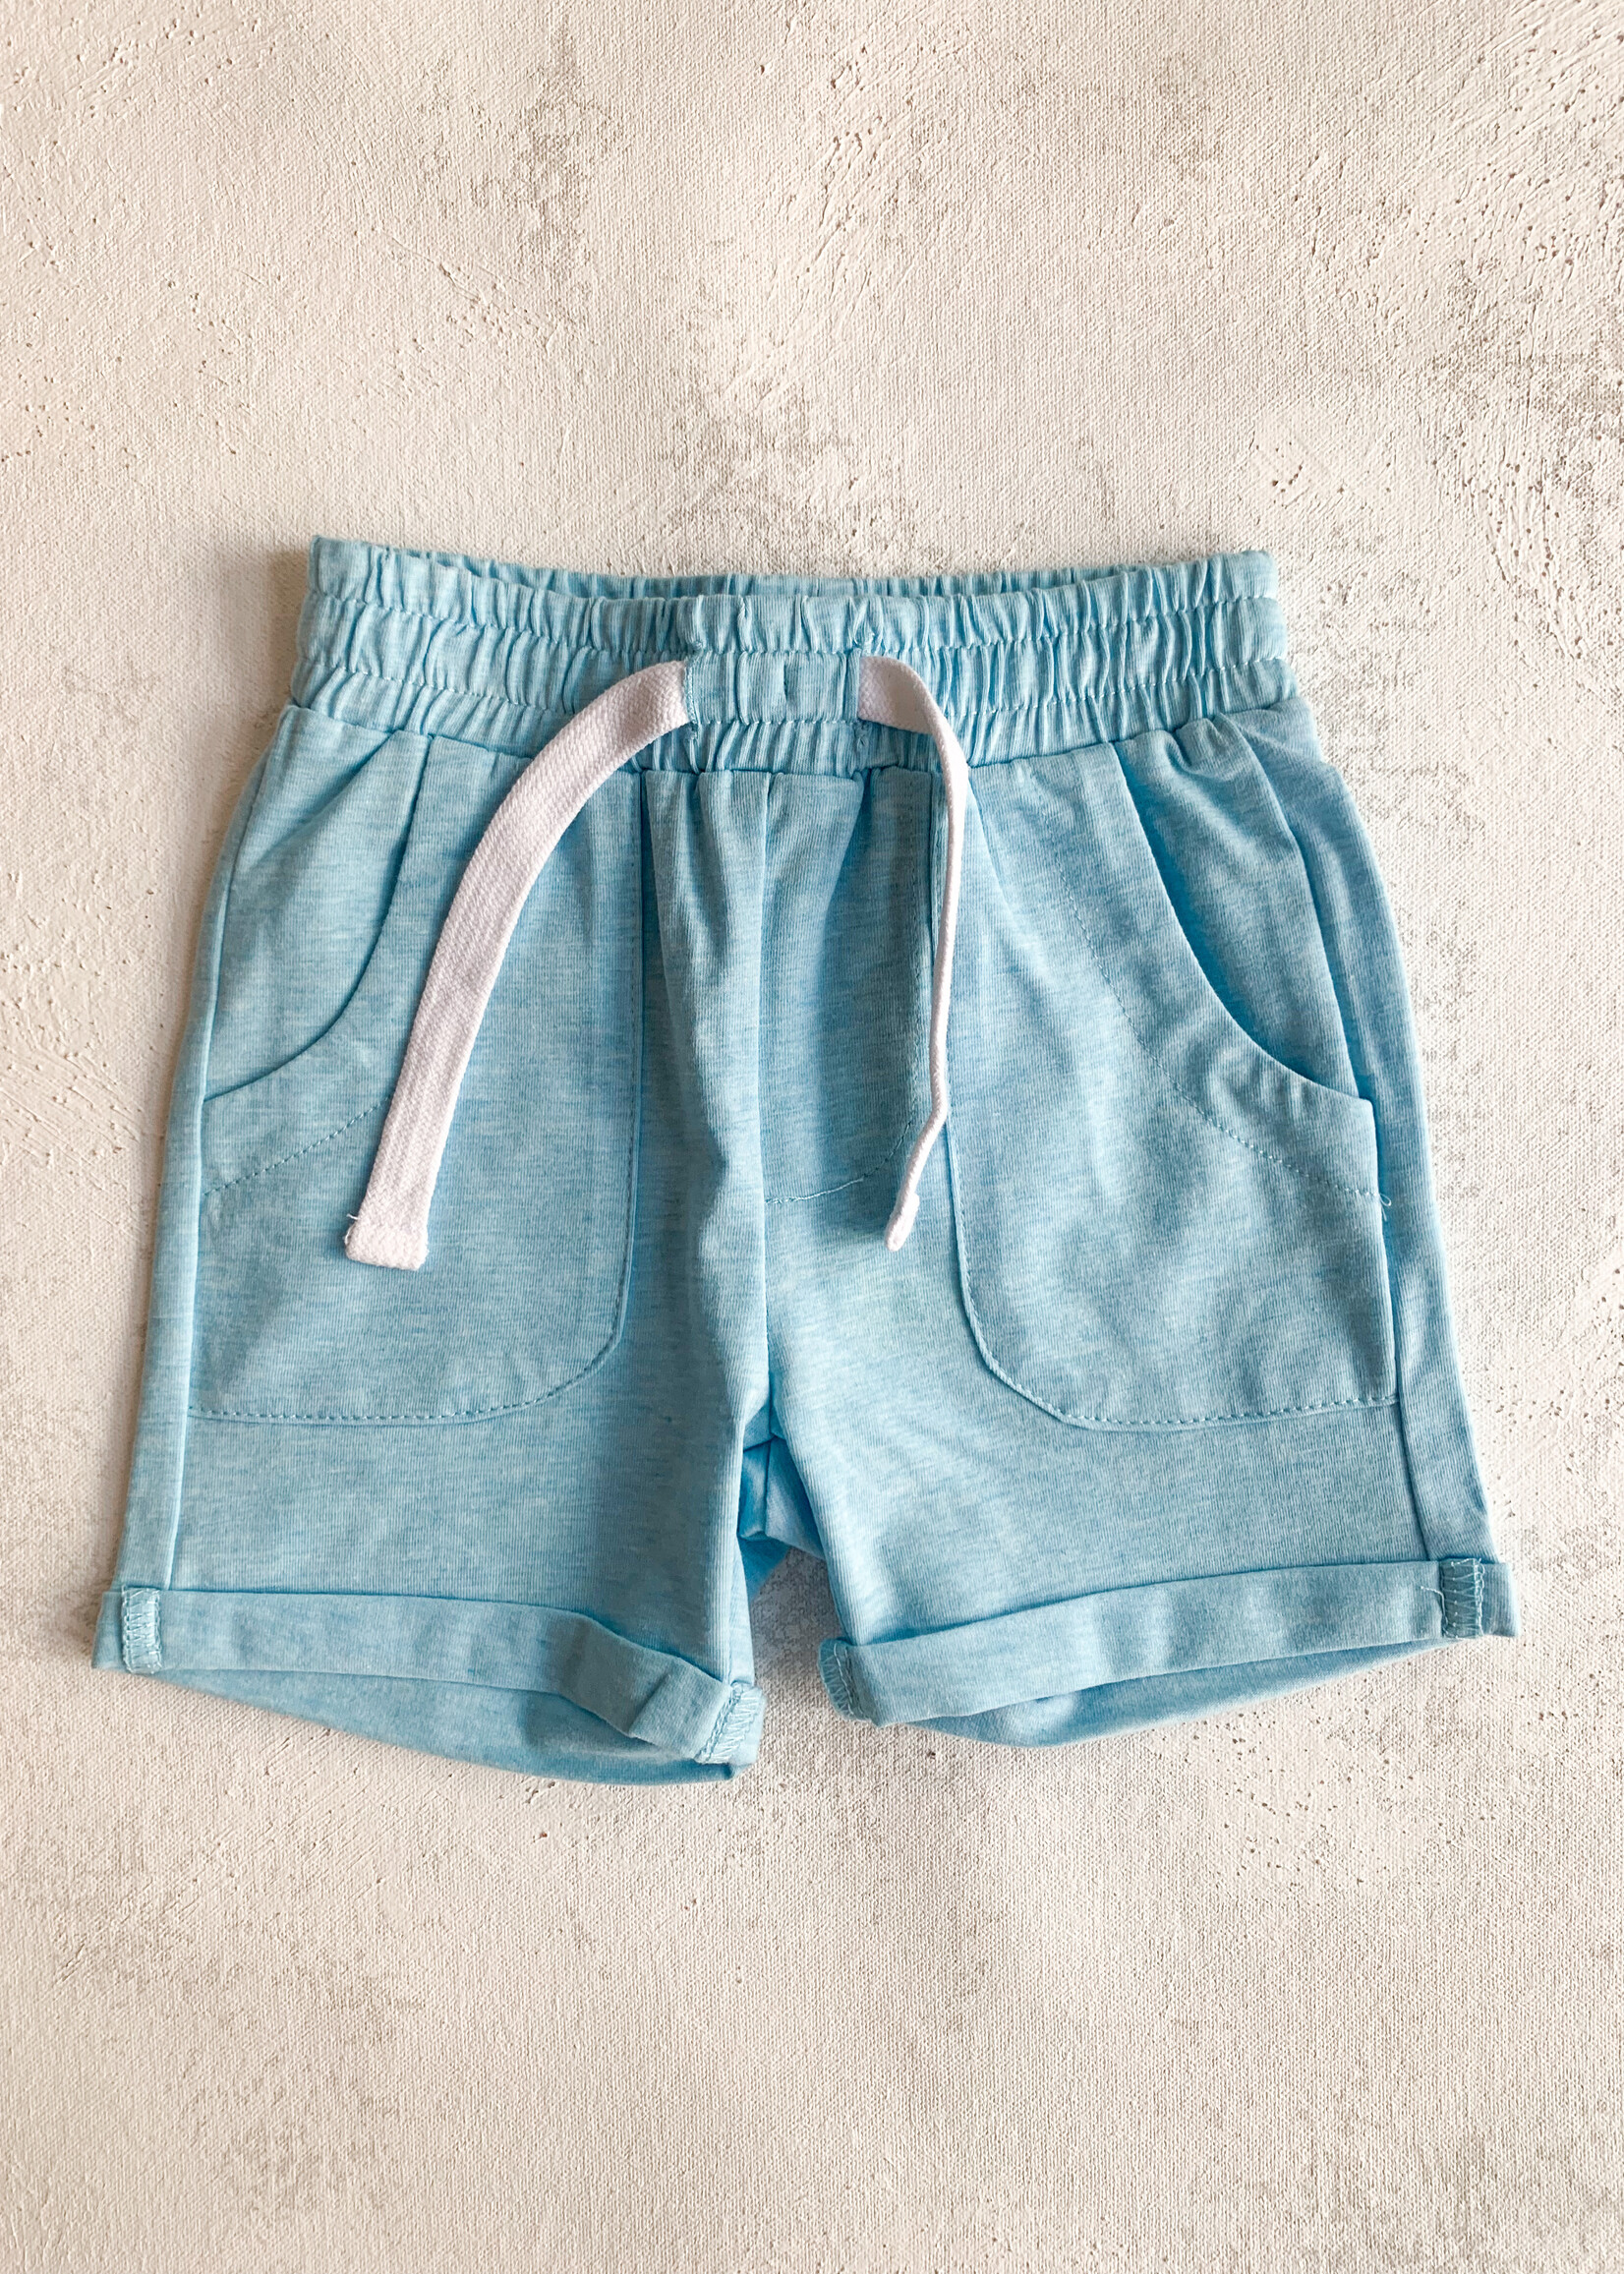 Elitaire Petite Reuben Shorts in Blue